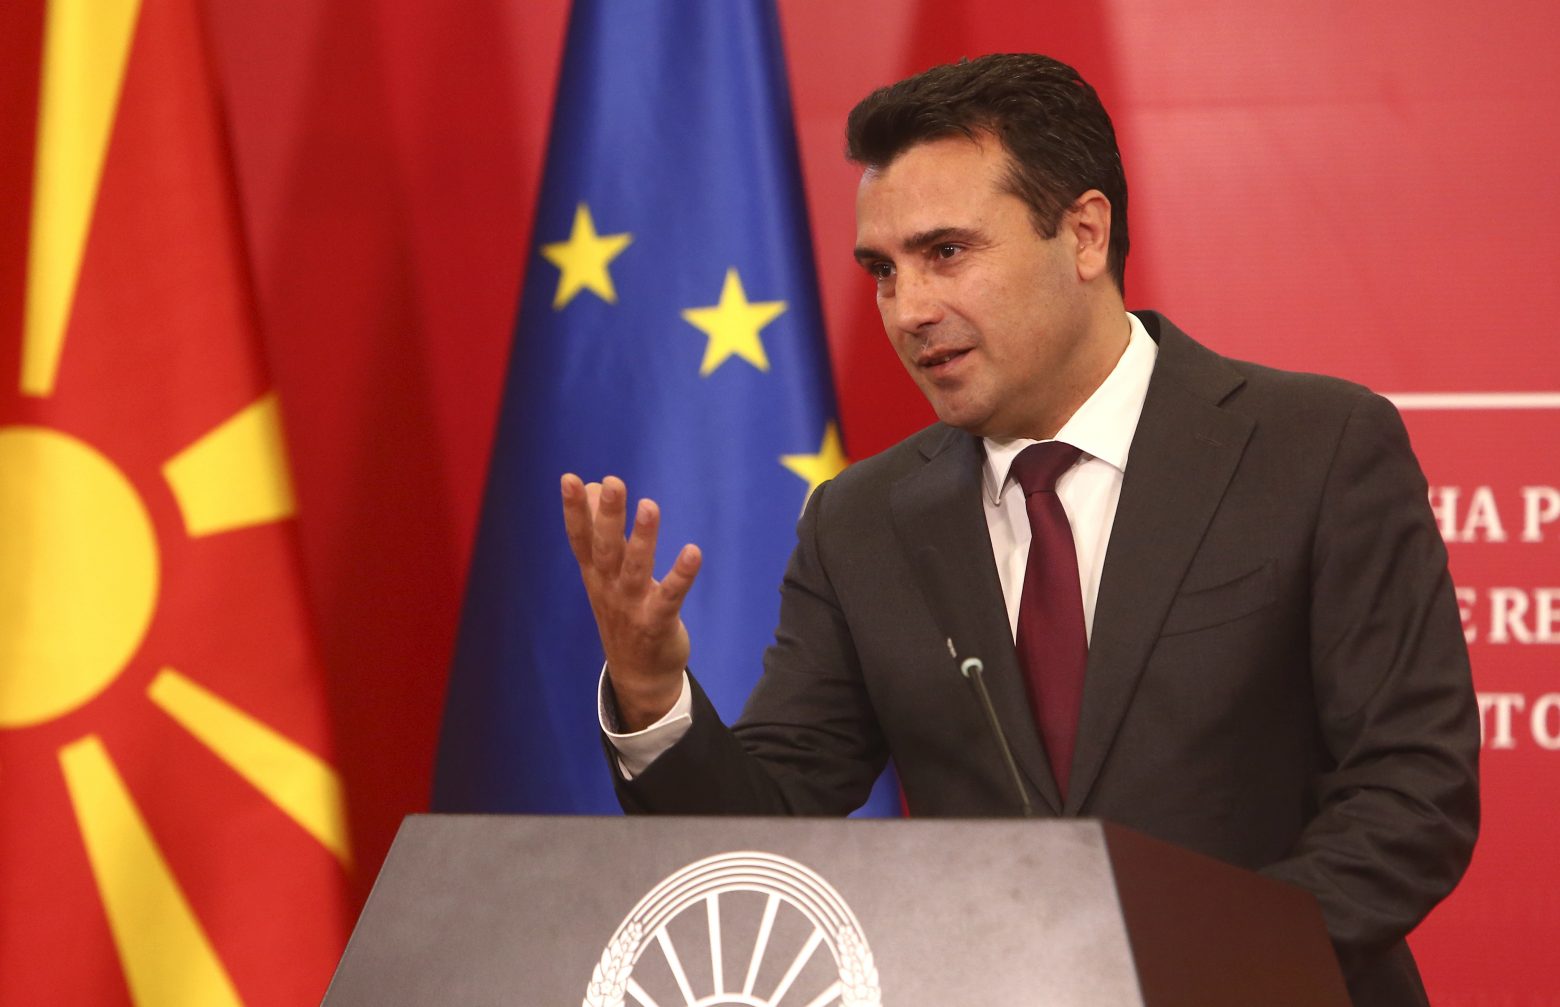 Β. Μακεδονία - Σημαντικές απώλειες για το κόμμα του Ζάεφ στον πρώτο γύρο των δημοτικών εκλογών